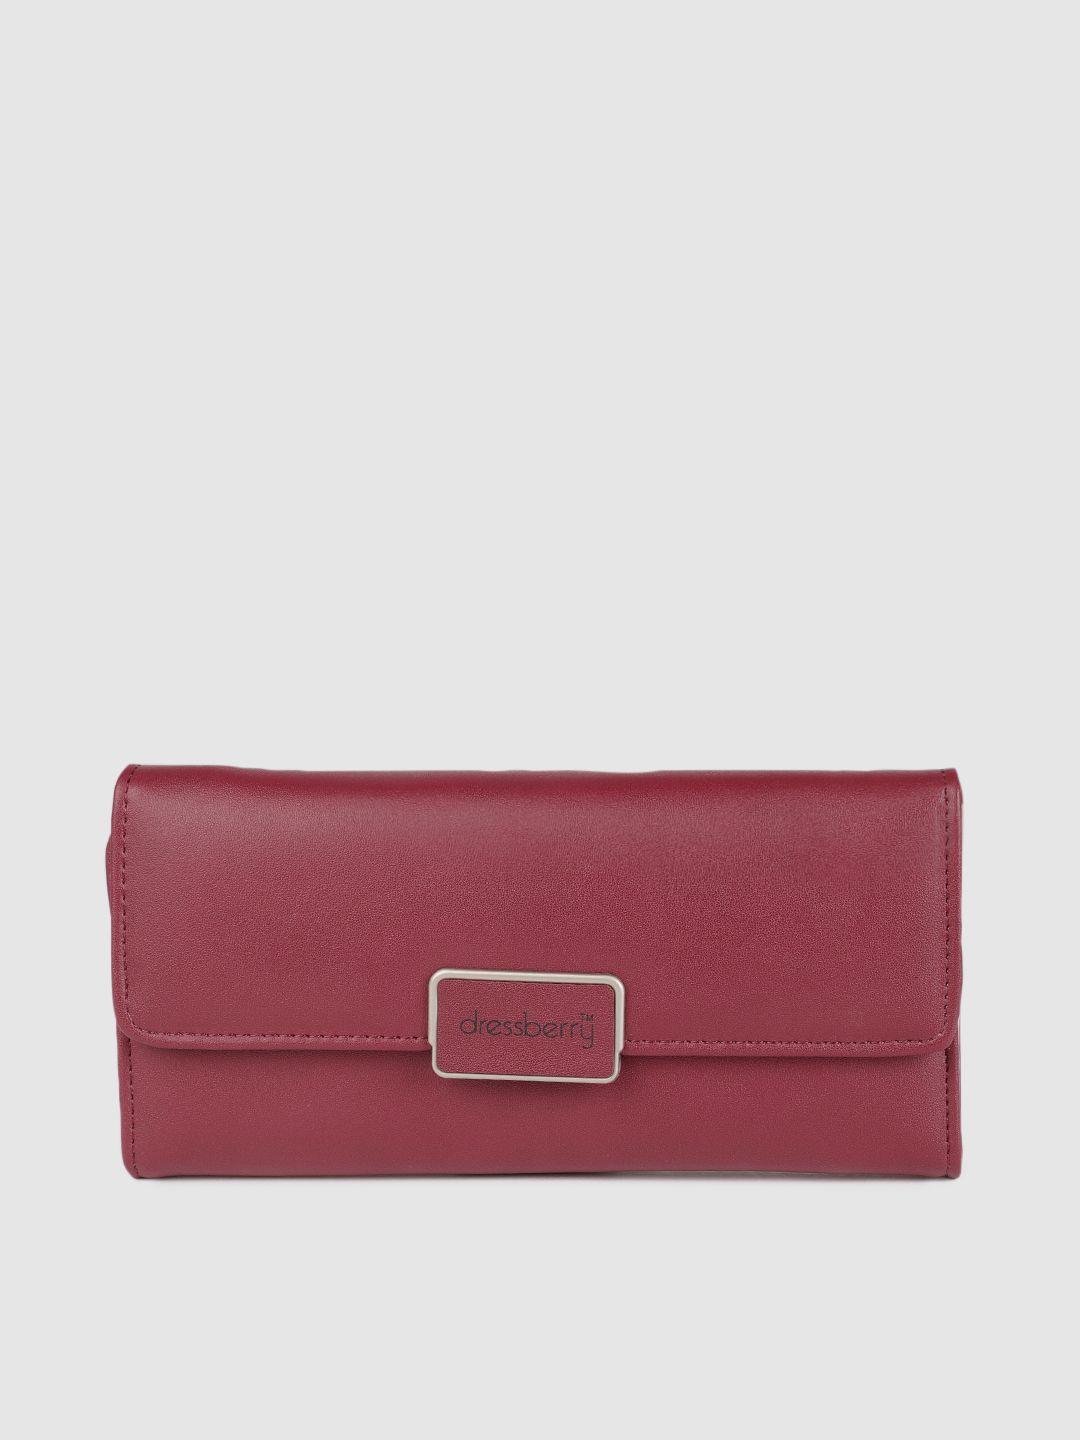 dressberry-women-burgundy-solid-two-fold-wallet